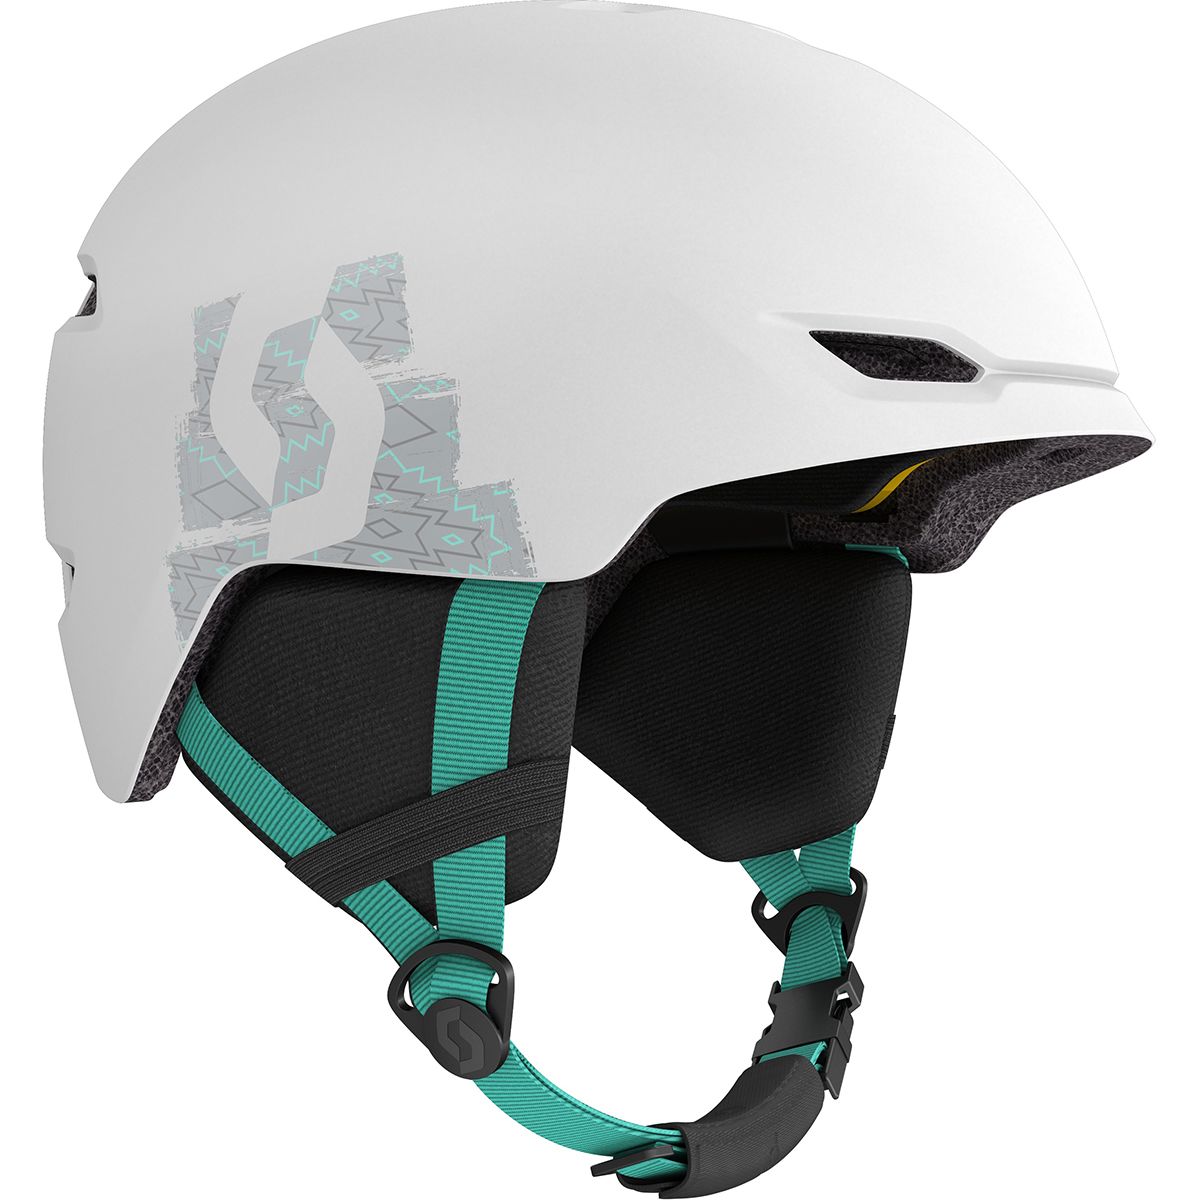 Scott Keeper 2 Plus Helmet - Kids' White/Mint Green